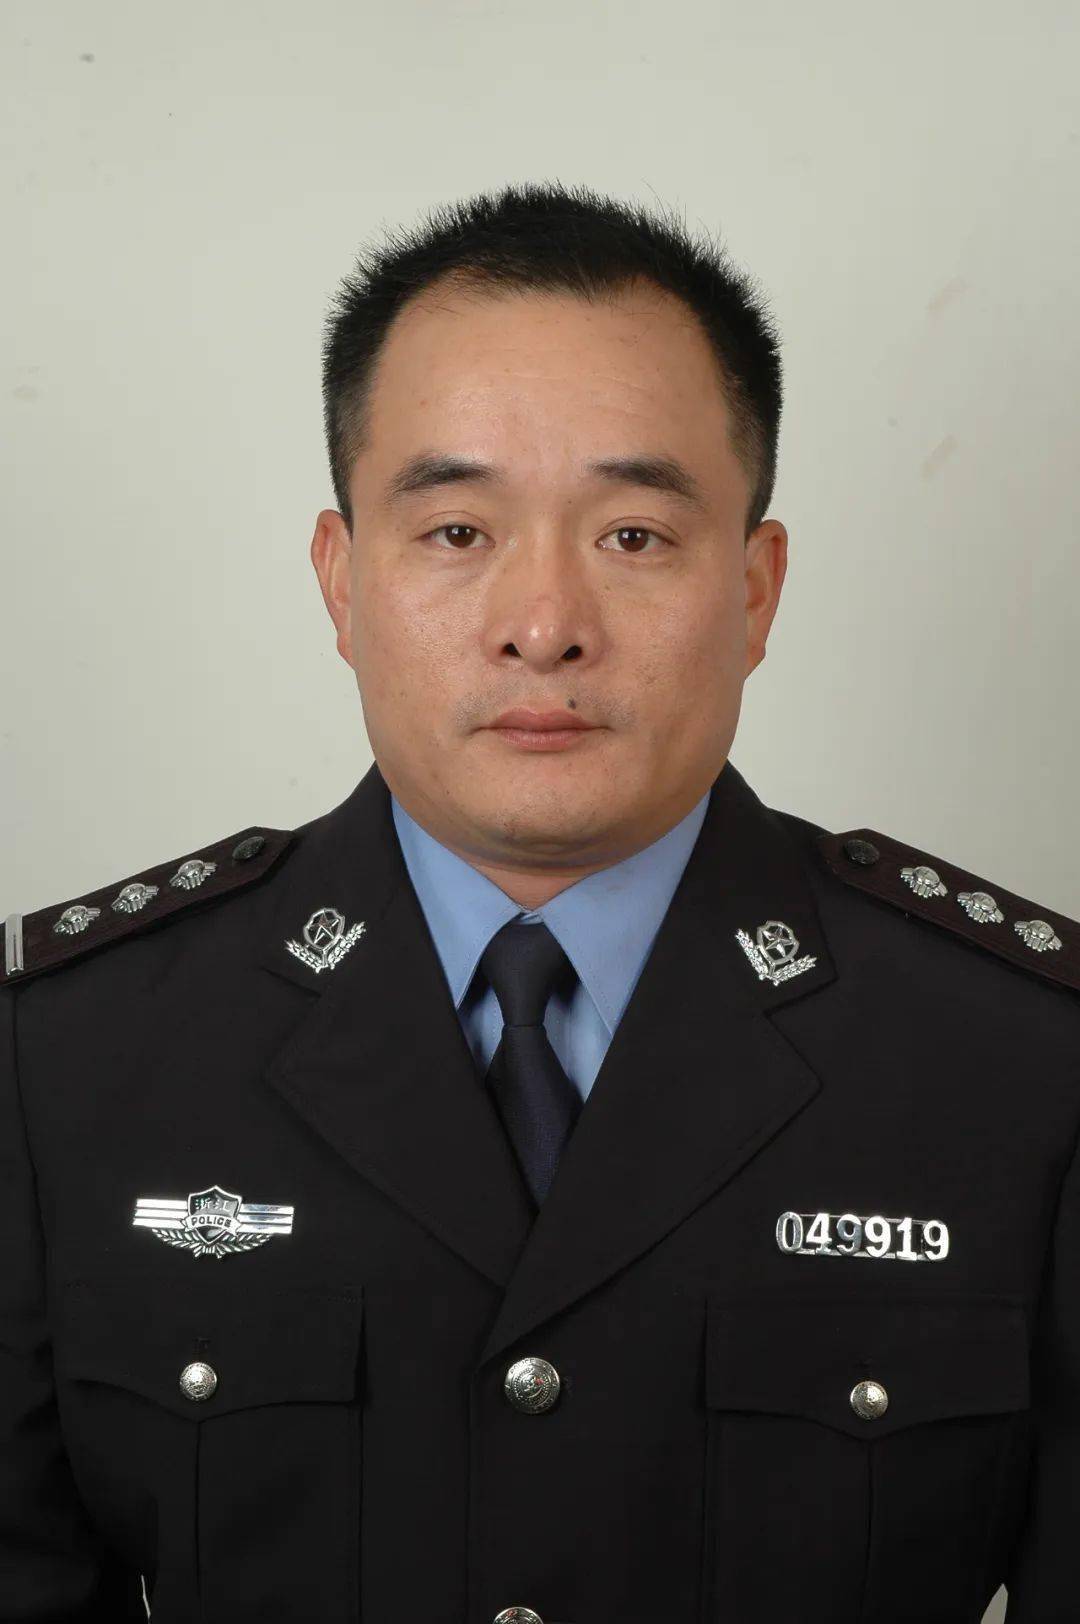 李伟强李伟强,男,中共党员,1974年出生,1992年入伍,2007年退役,海宁市